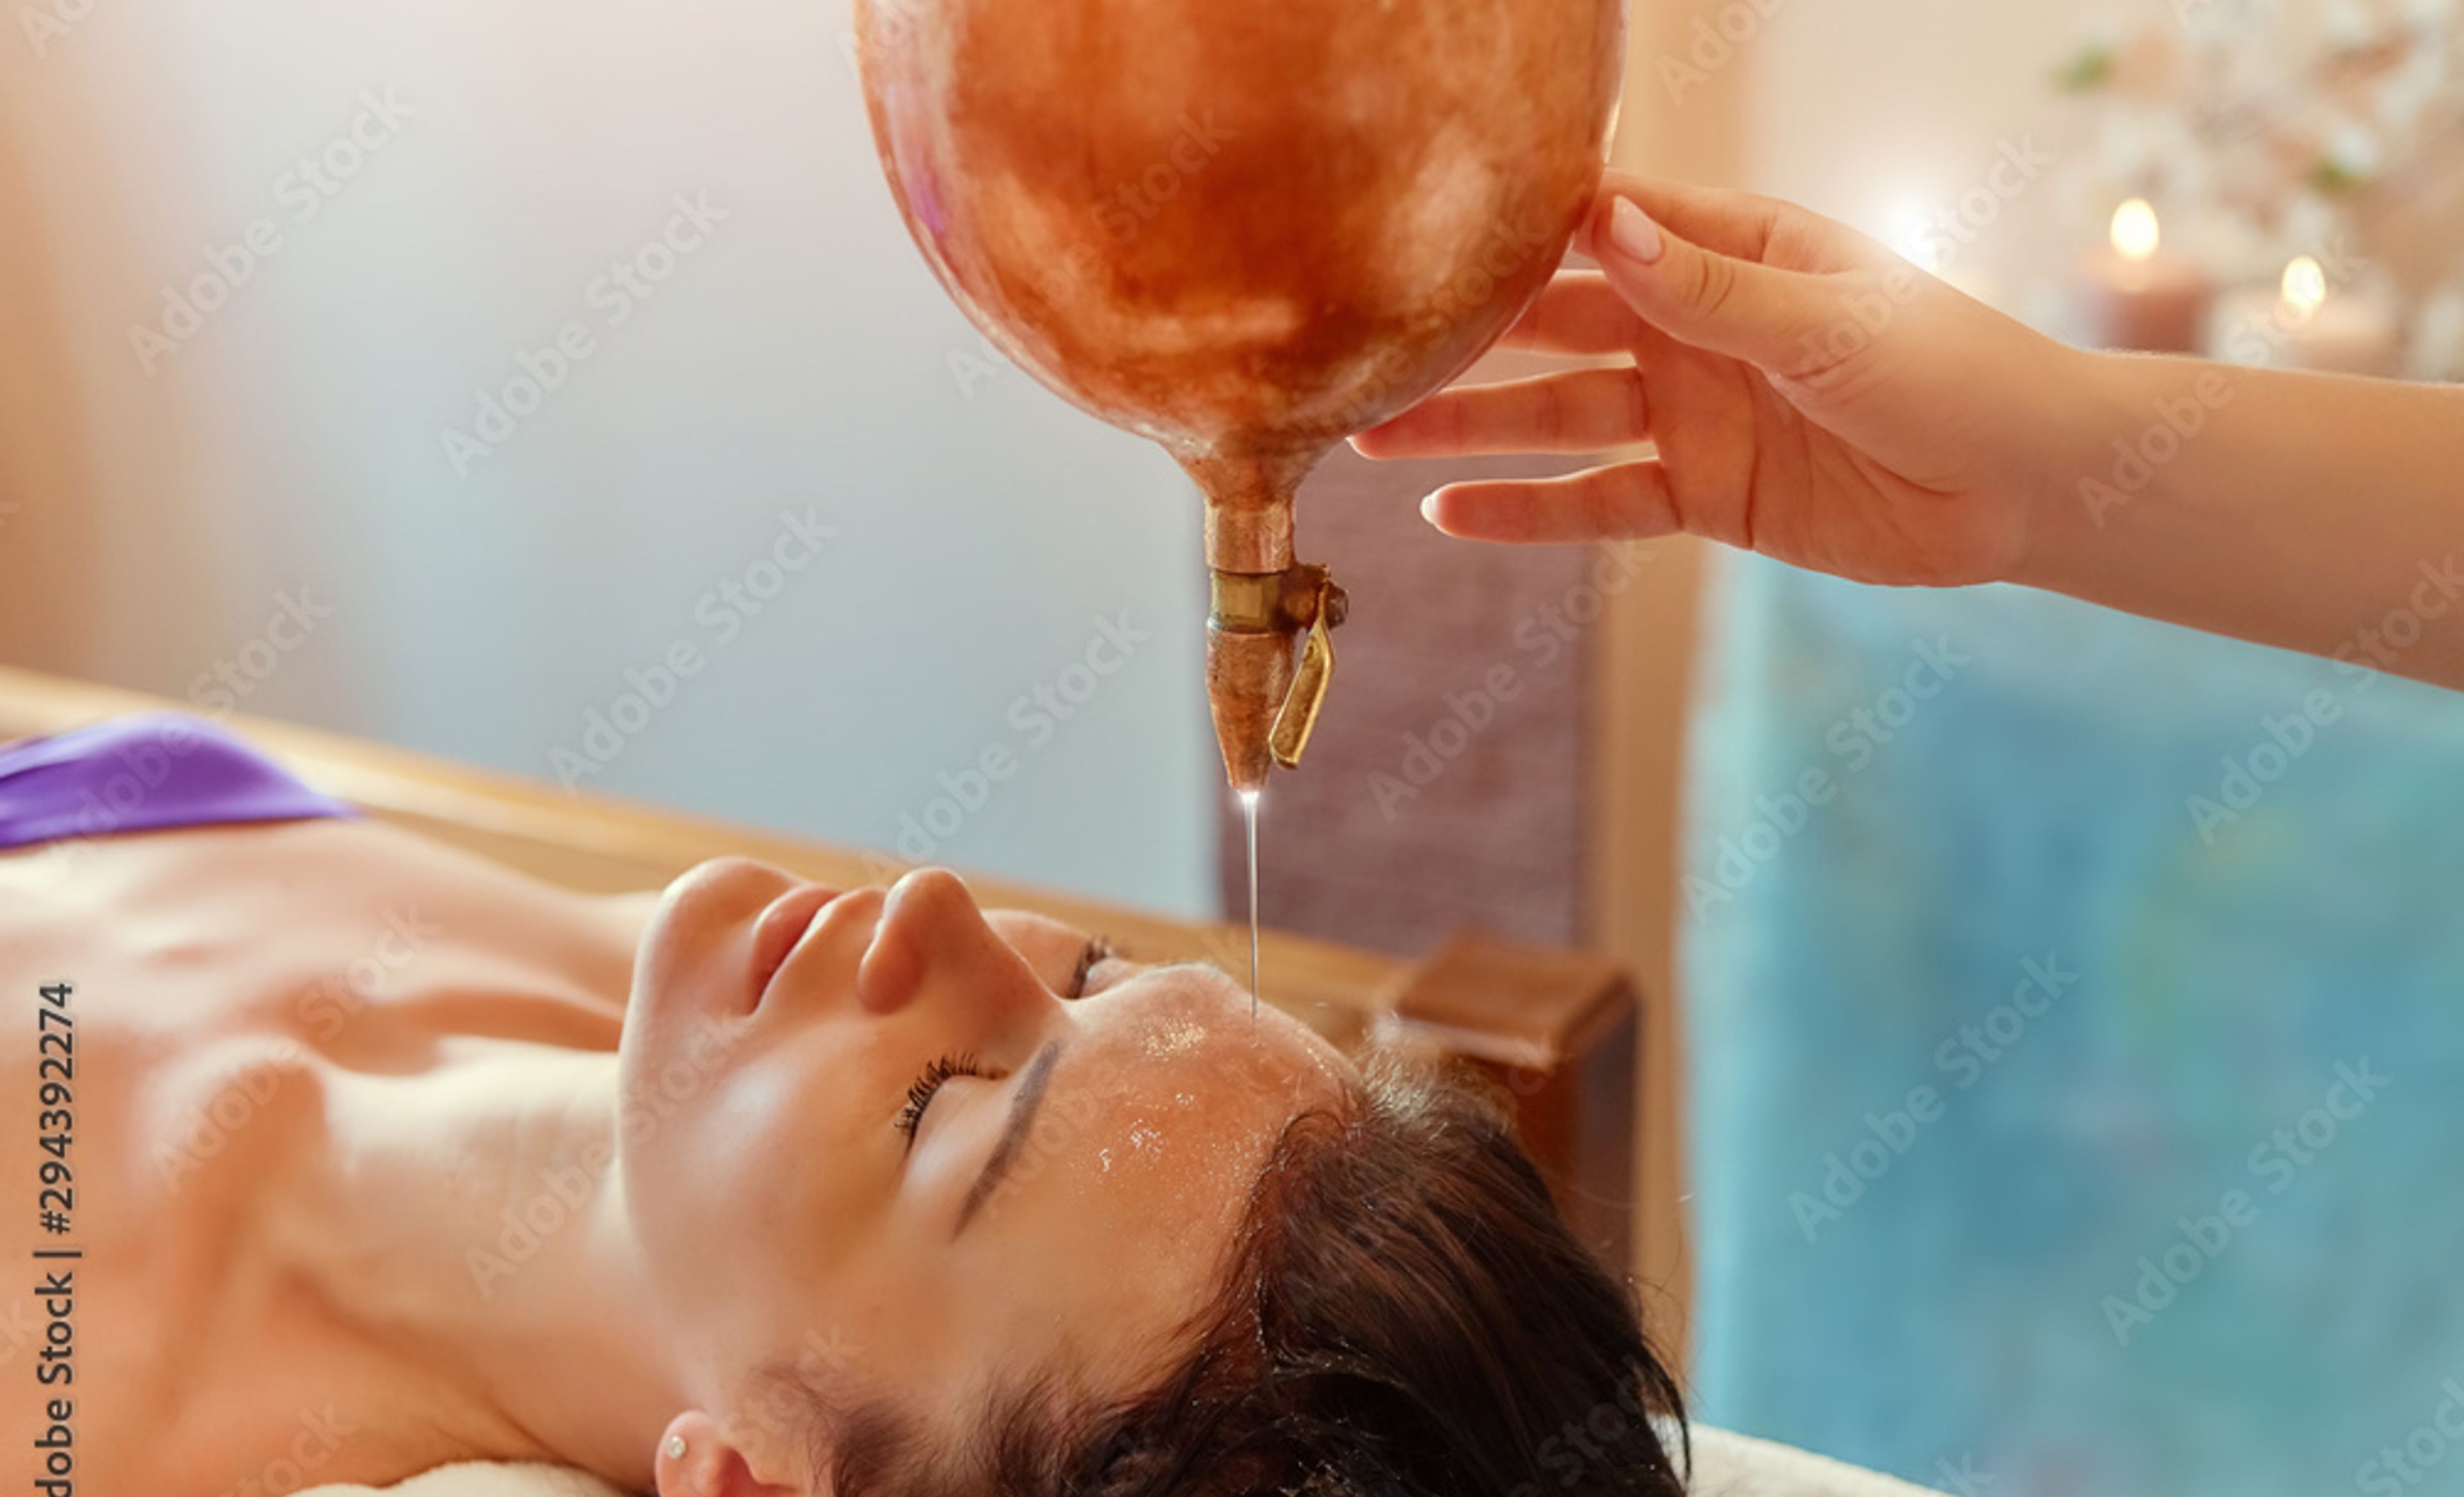 Frau bei einer Gesichtsbehandlung, bei der ihr Öl gegossen wird.